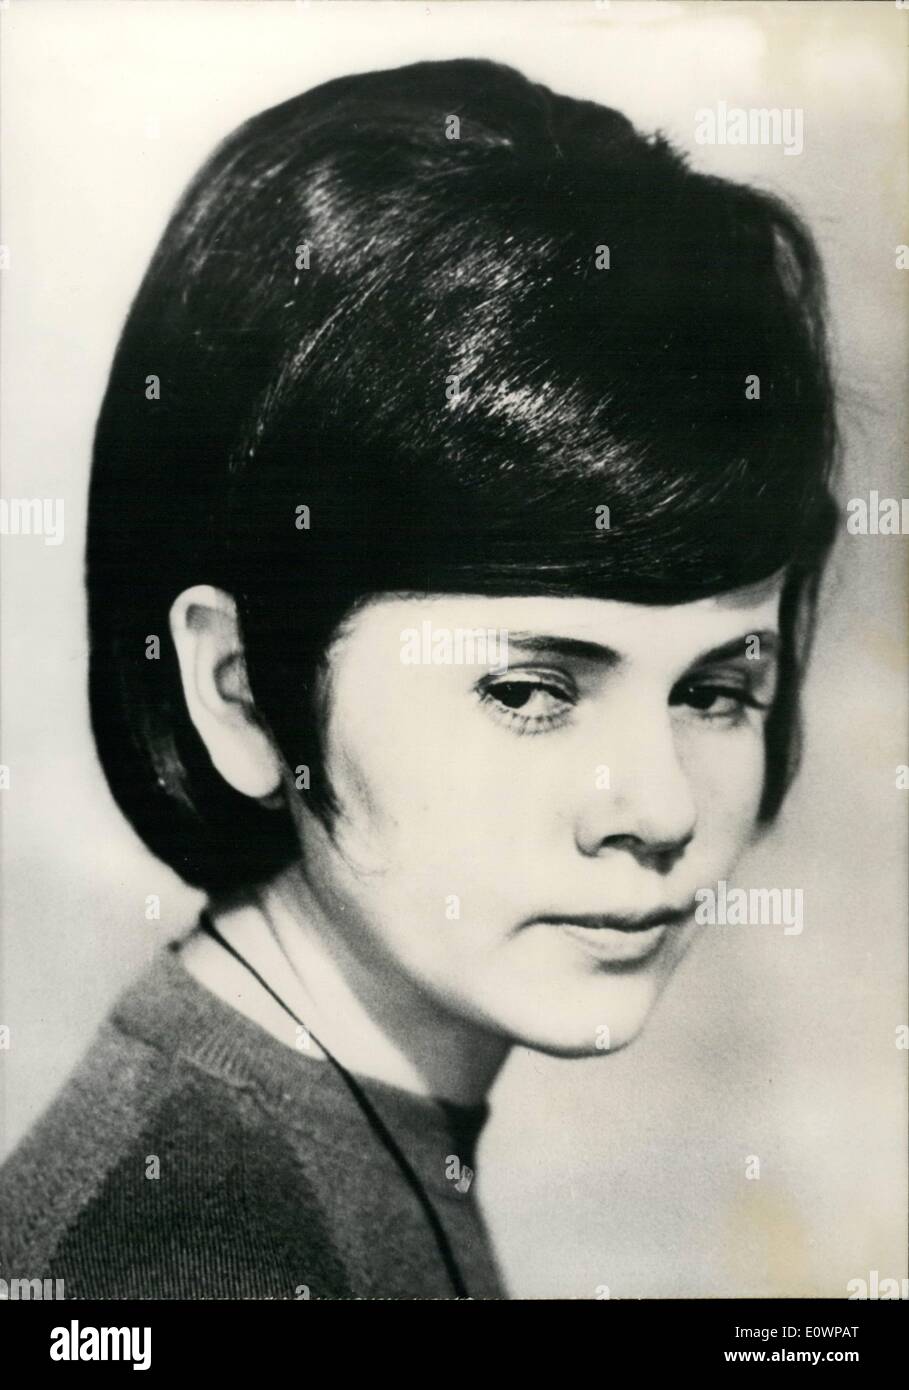 1. Januar 1964 - Minou Drouet bekommt eine neue Frisur: '' Beatle'' wie Minou Drouet, um 16 Uhr, ist bereits eine alte Dichterin. Sie begann eine Karriere im Alter von 8 und war auf einmal in der Mitte einer Kontroverse über, wer der Autor der Gedichte von ihr unterzeichnet war. Jetzt ist ein Teenager und liebt es zu verdrehen. Als die "Beatles" ihre Eröffnung bei Olympia wieder in Paris hatte, beschloss sie, es mit einer neuen Frisur zu besuchen. Sie bat Diane de Paris, ihr Friseur färben ihre Haare braun und Stil, die ihnen der Weg der "Beatles" Kämmen Sie Ihre. Das Foto zeigt einen dicken Pony auf der Stirn, und lange locken den Trick tun Stockfoto